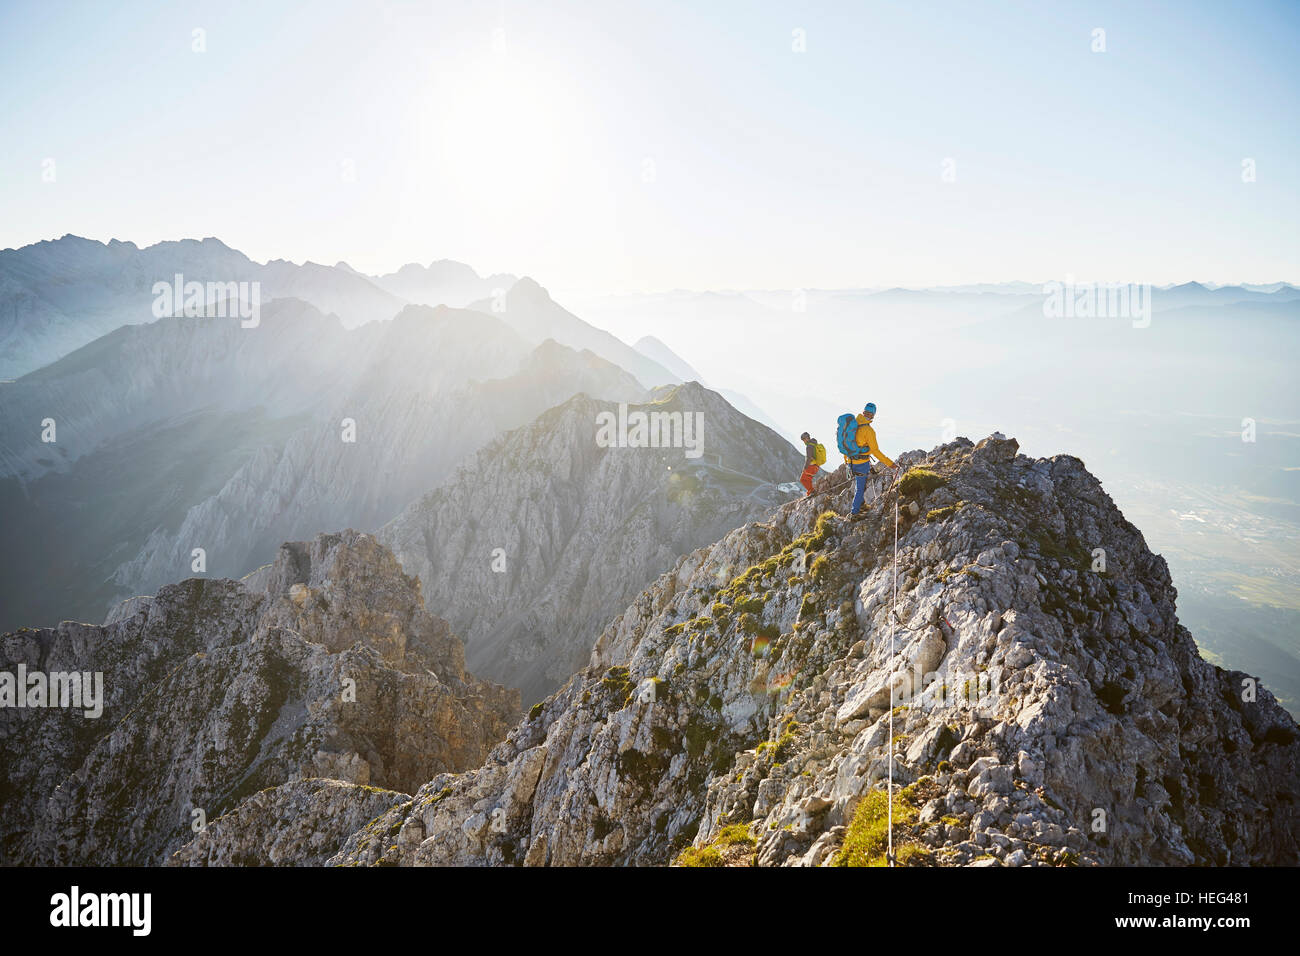 Escalade en montagne, deux alpinistes fixé au câble en acier, Chaîne de l'Inntal, vallée de l'Inn, Tyrol, Autriche Banque D'Images